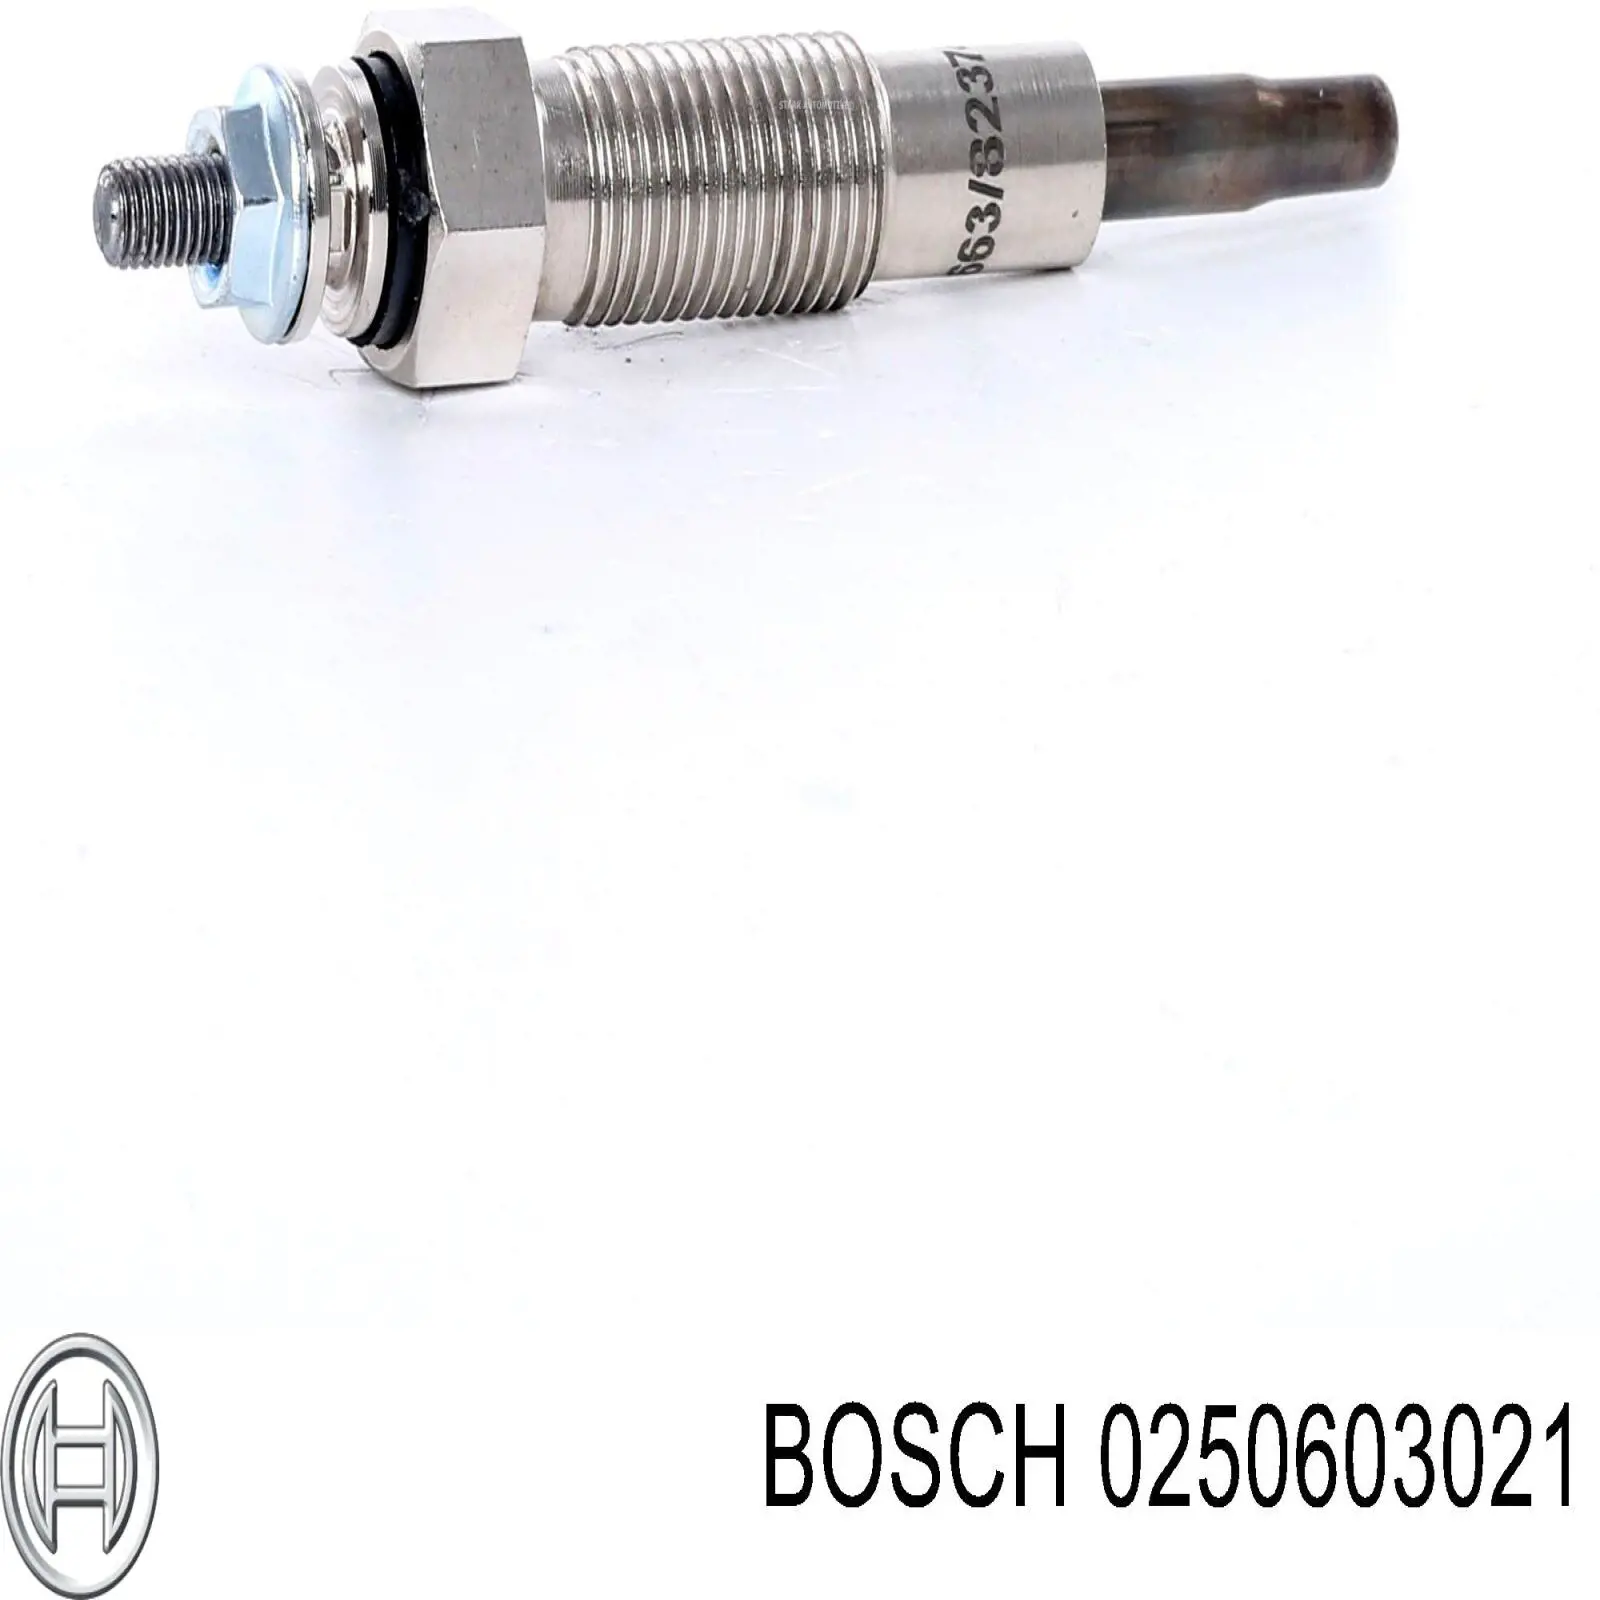 0250603021 Bosch bujía de precalentamiento